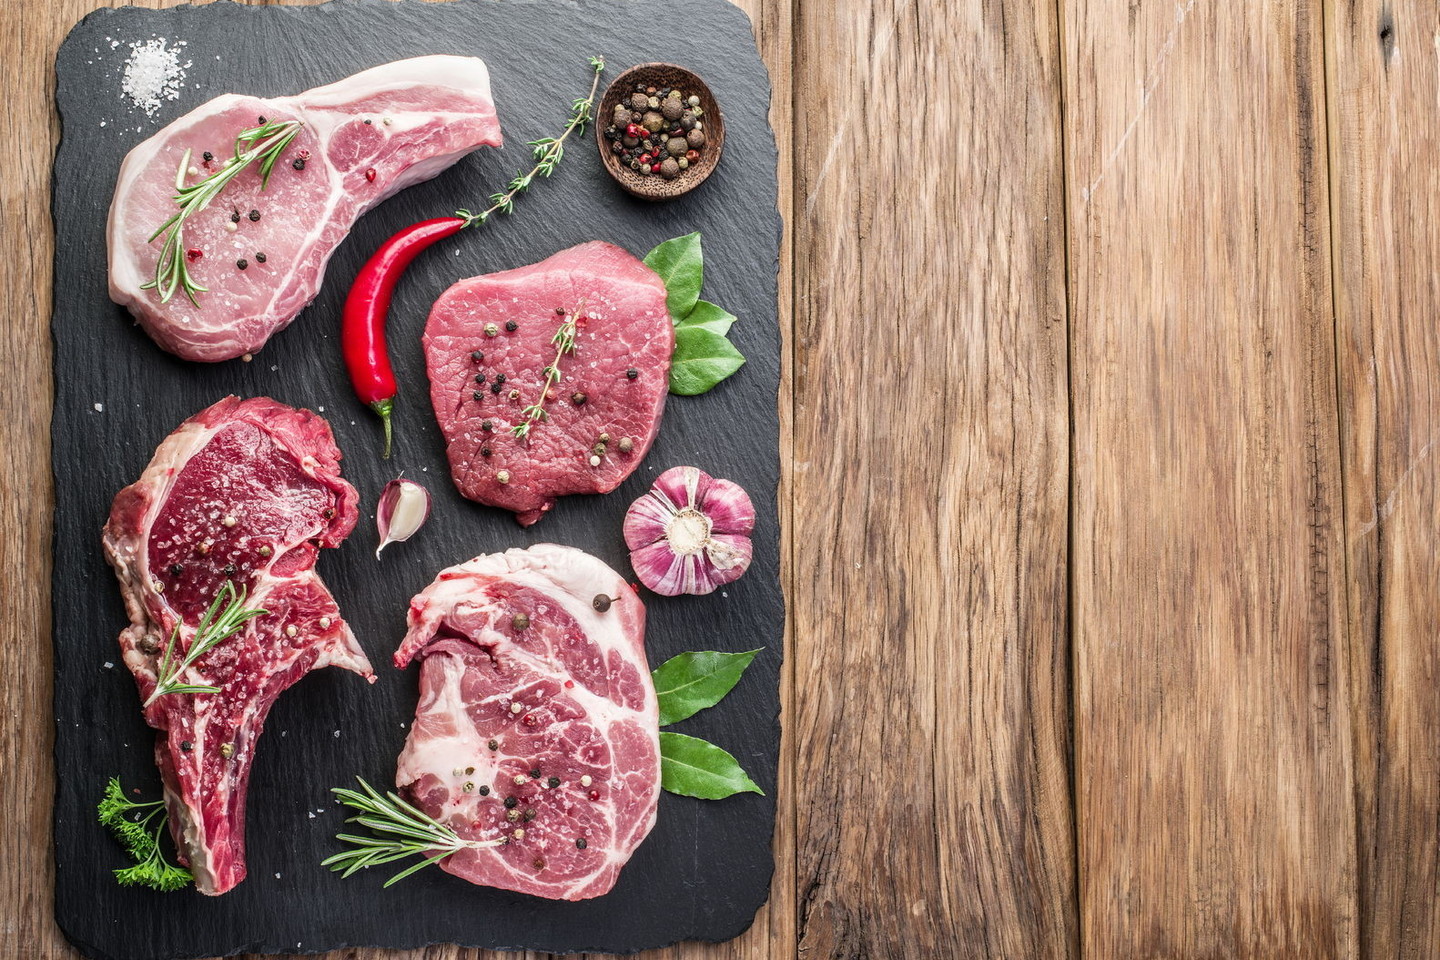 Kaip išsirinkti tinkamą mėsą, kaip ją marinuoti ir kuo pagardinti, kad kiekvienas kąsnis taptu malonumu?<br>123rf nuotr.